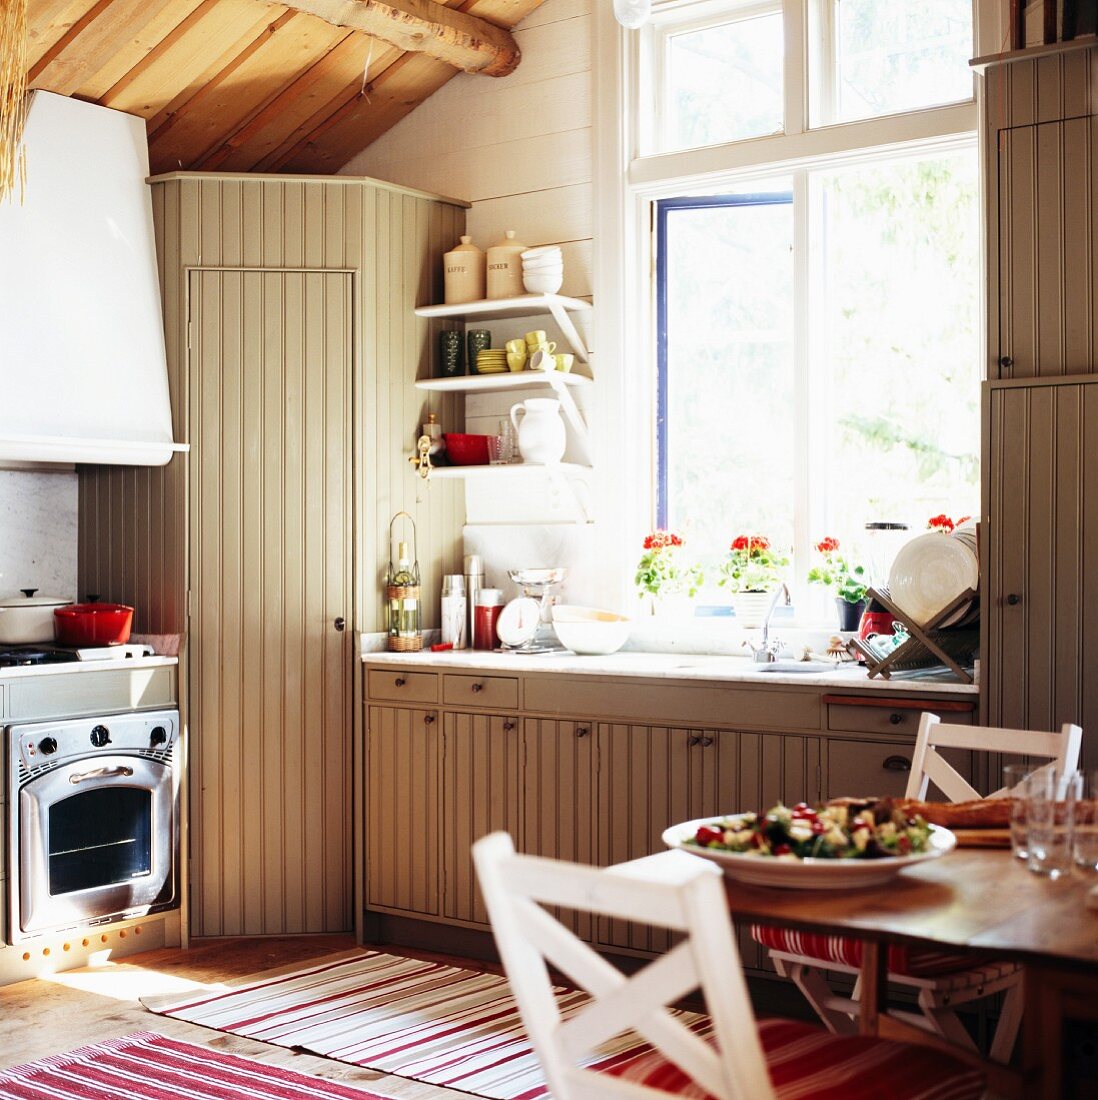 Einbauküche im Country-Style mit Holzfronten unter rustikaler Dachkonstruktion